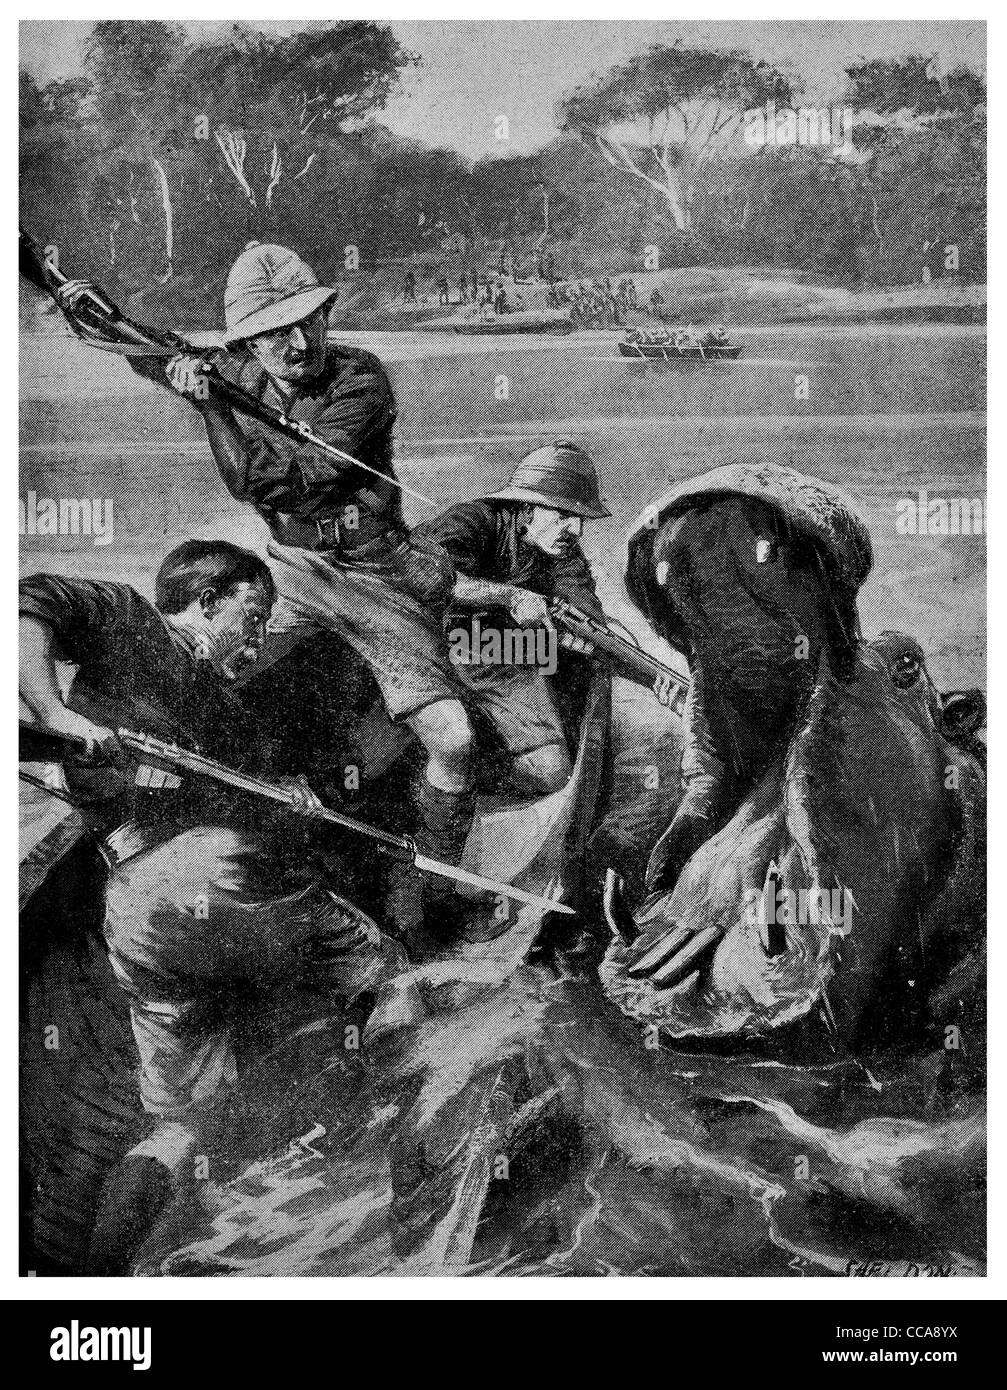 1917 Behobeho fiume Rufiji generale barca Sheppard attaccato ippopotamo ippopotamo predatore preda fucile sangue a baionetta sport Africa Foto Stock